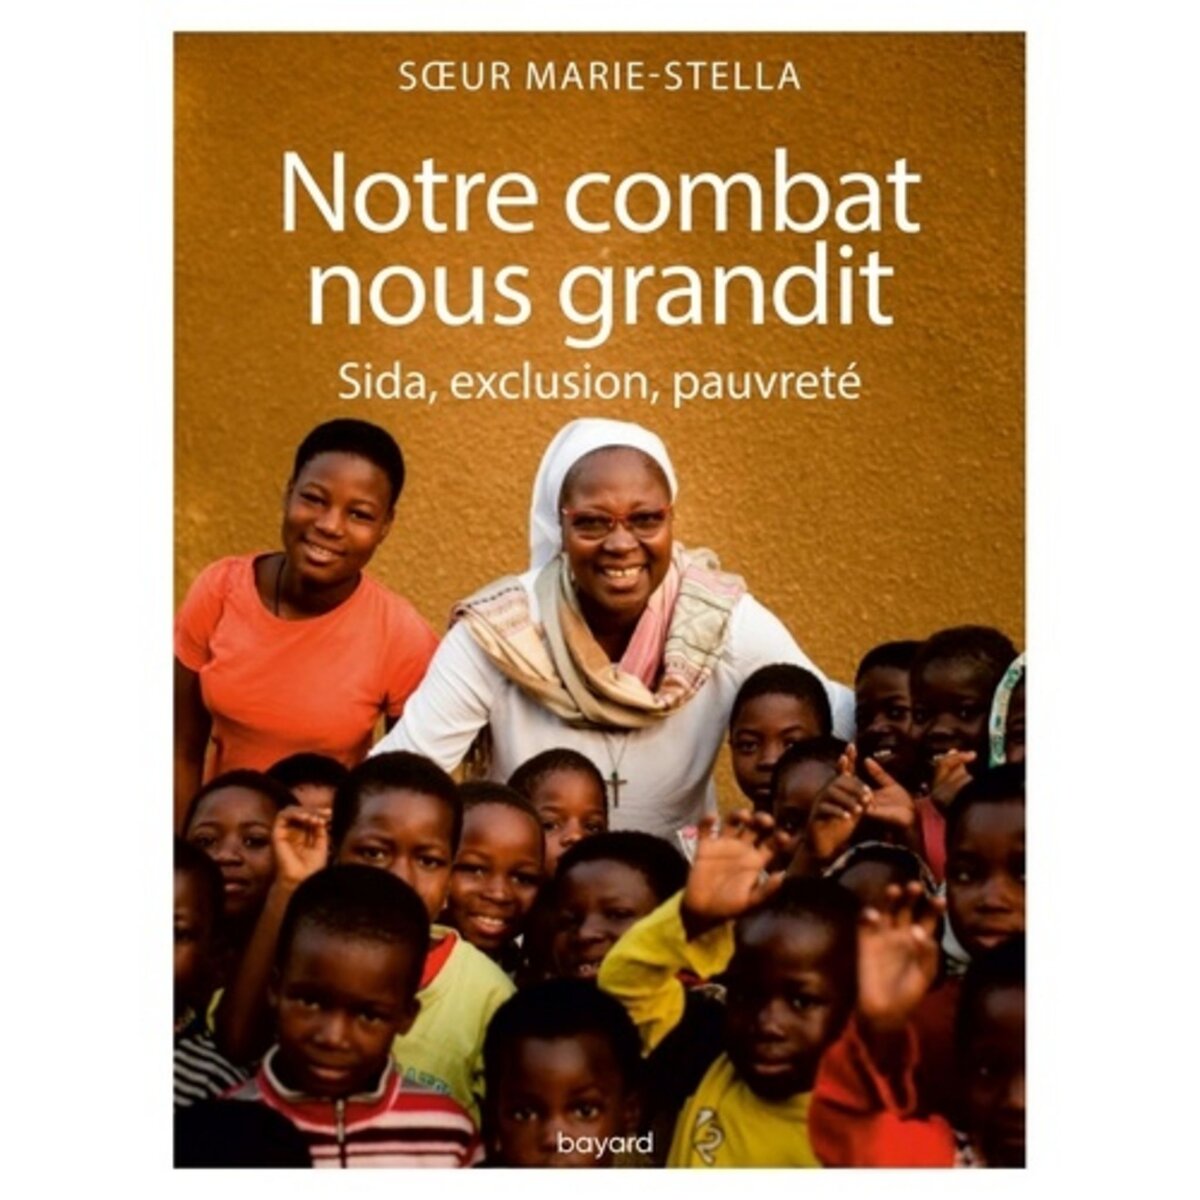  NOTRE COMBAT NOUS GRANDIT, Soeur Marie Stella